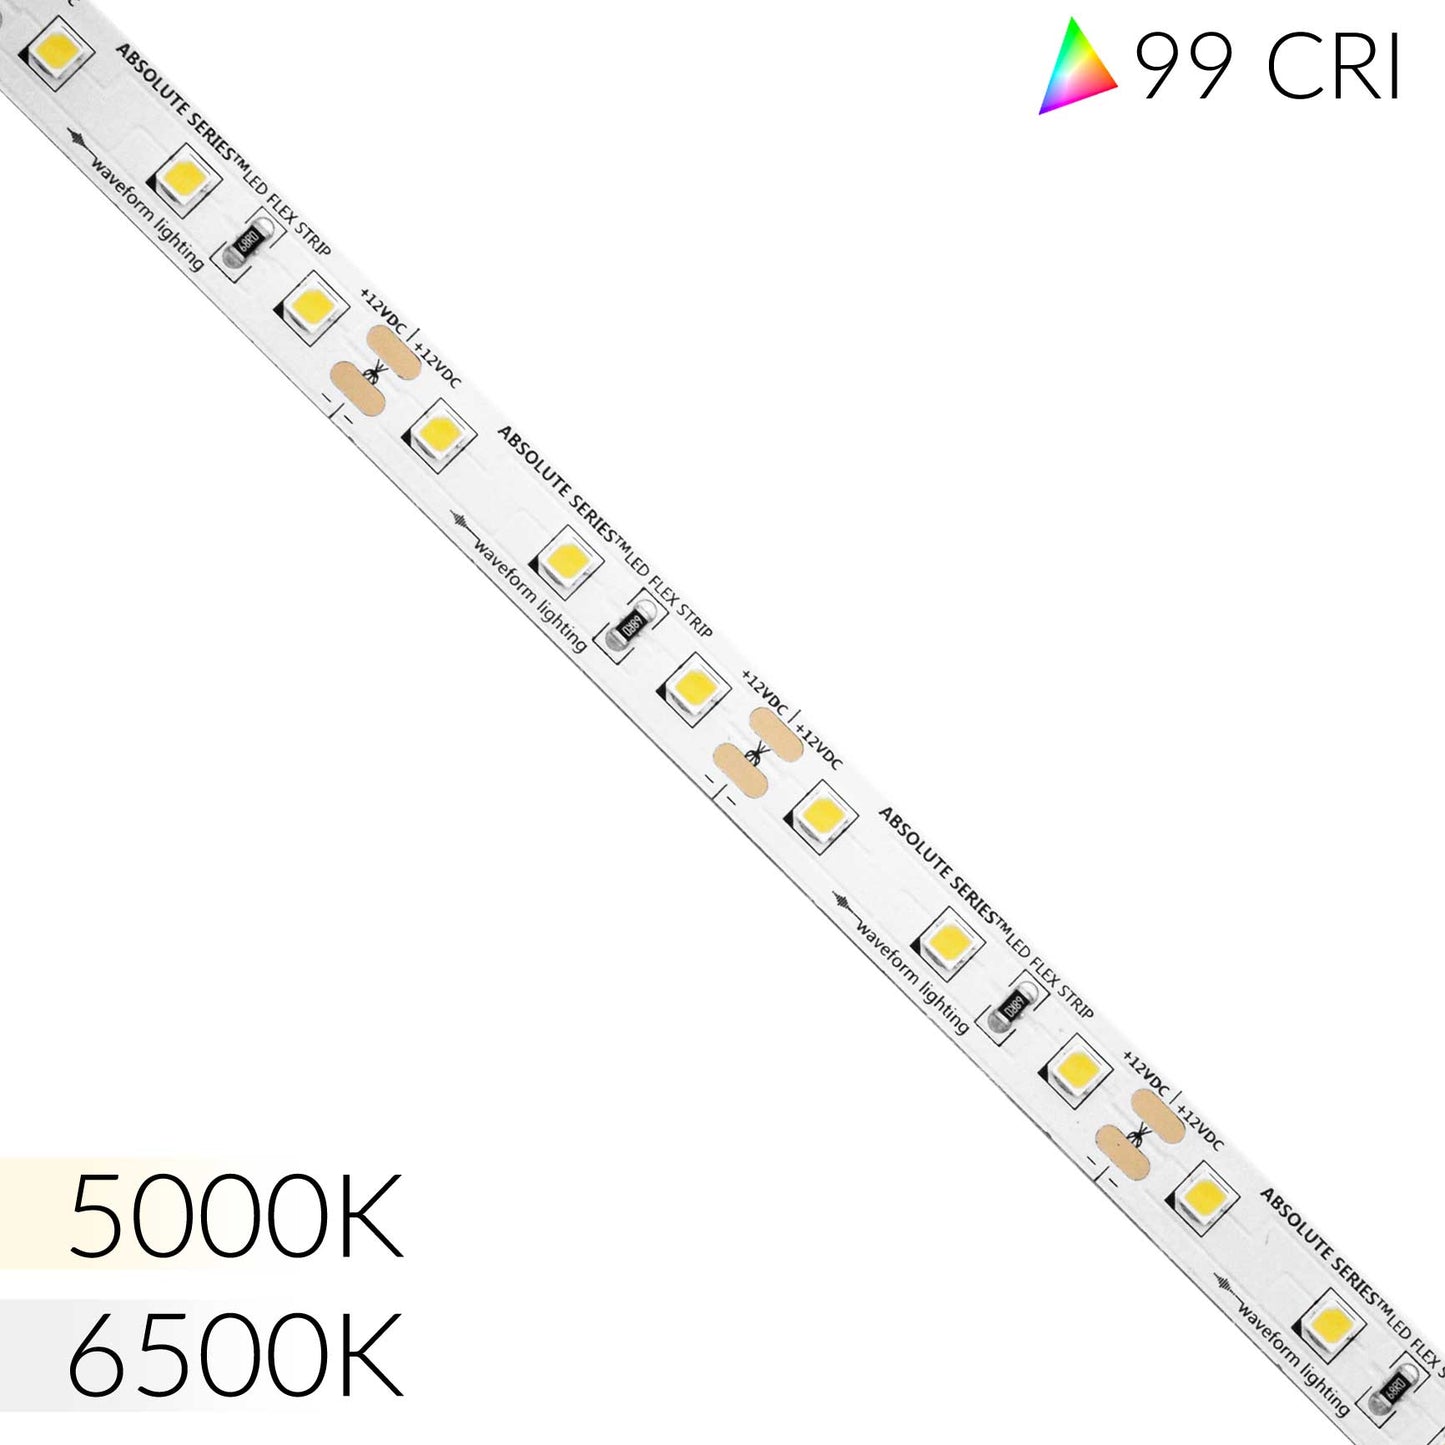 ABSOLUTE SERIES™ LED Flexible Strip - 99 CRI - D50 / D65